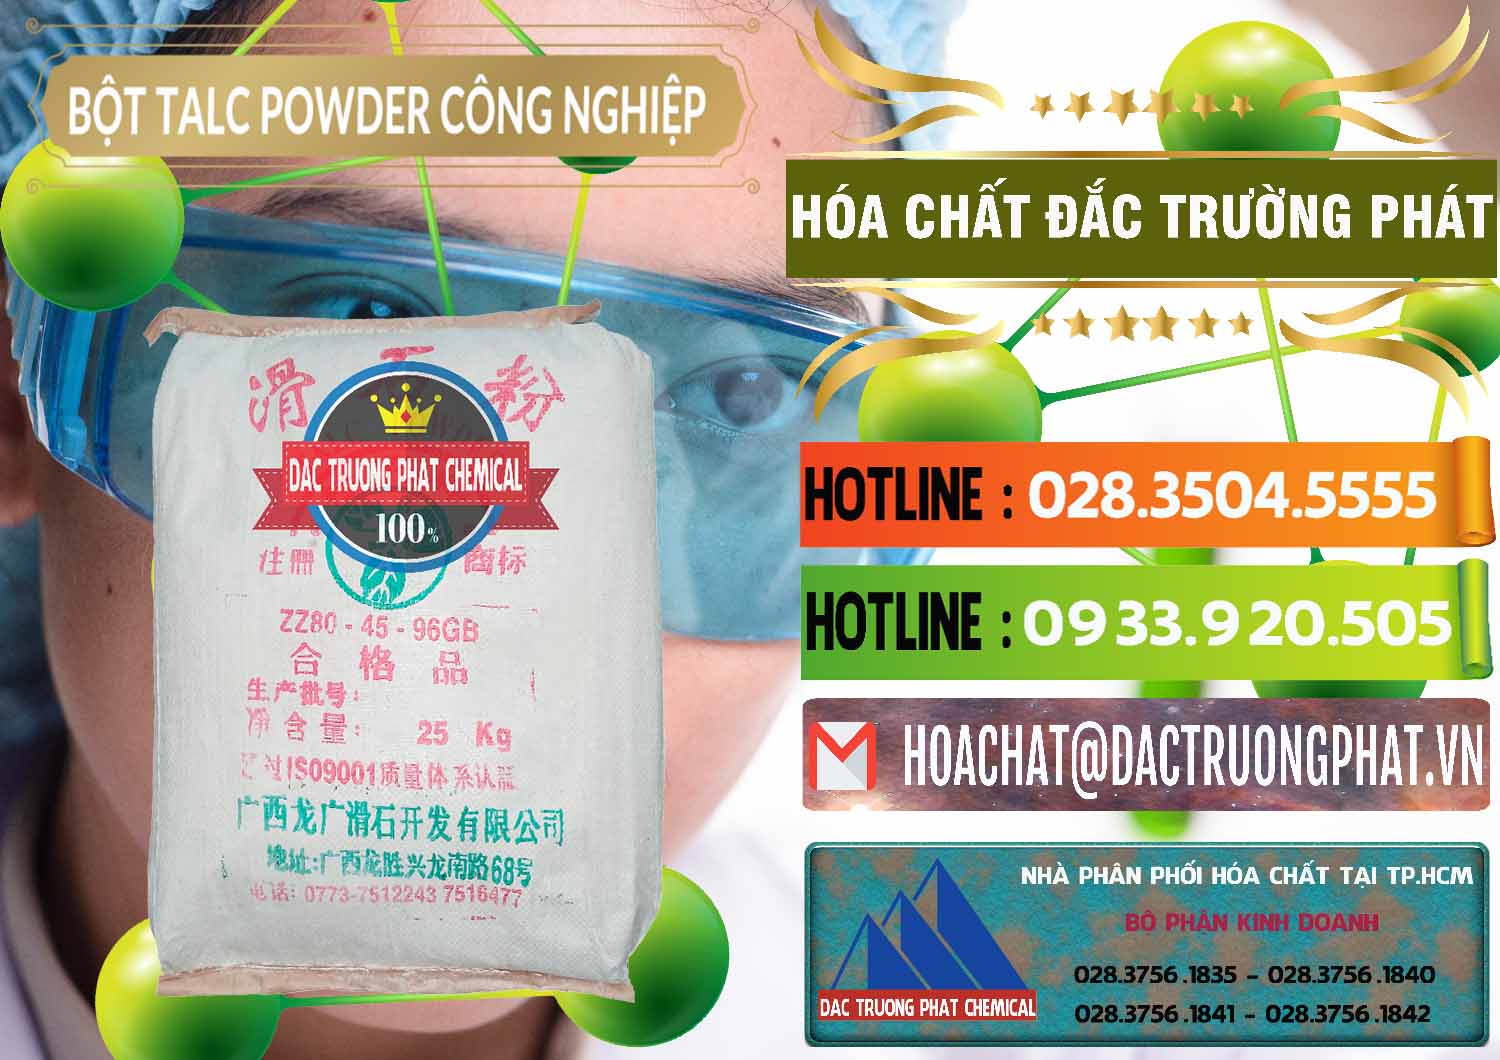 Đơn vị chuyên phân phối & bán Bột Talc Powder Công Nghiệp Trung Quốc China - 0037 - Công ty chuyên phân phối - nhập khẩu hóa chất tại TP.HCM - cungcaphoachat.com.vn